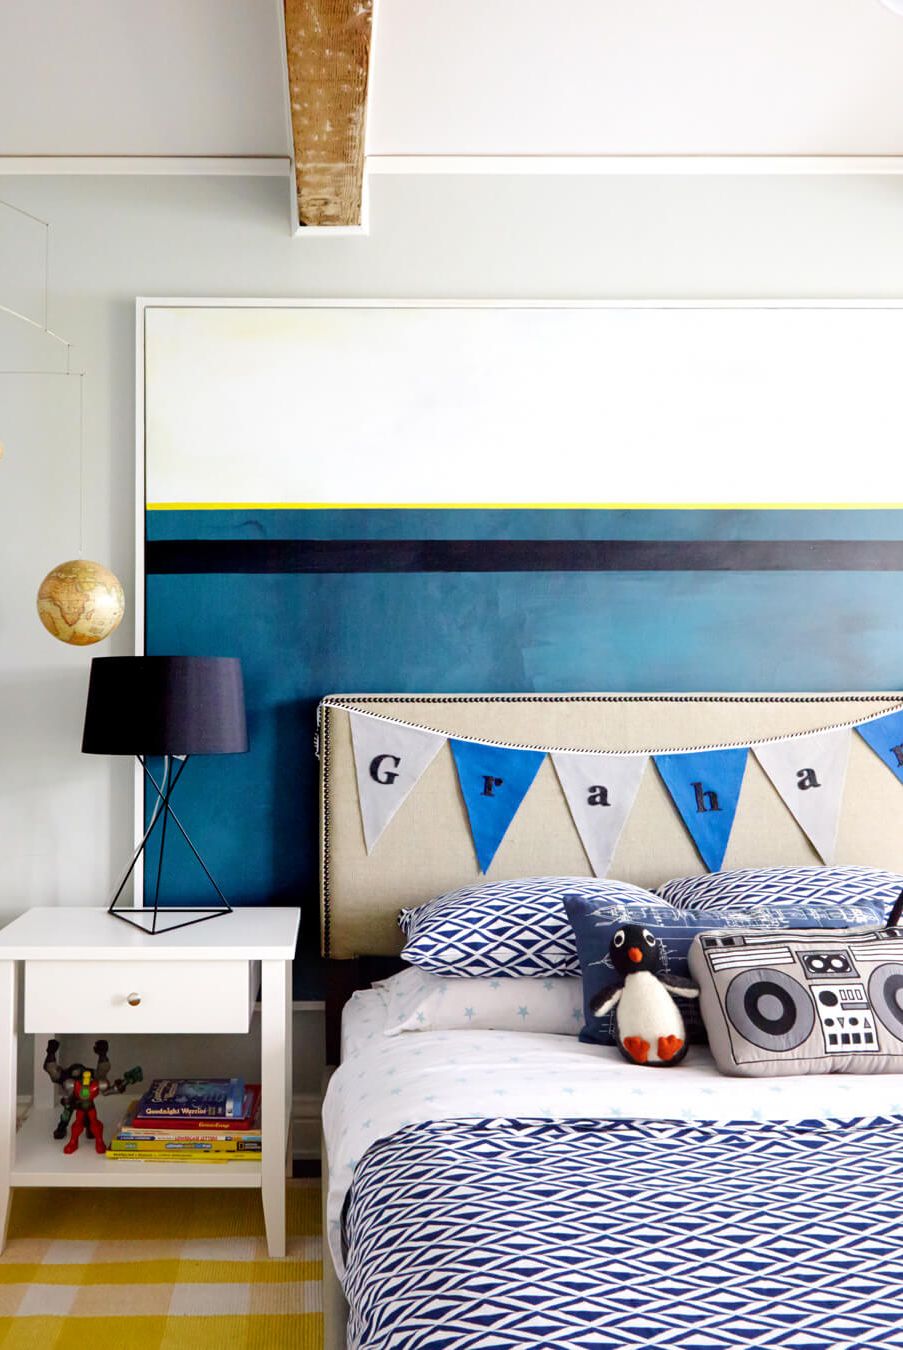 أزرق أو أصفر وألوان تانية اعرفى الألوان المناسبة لطلاء غرف نوم